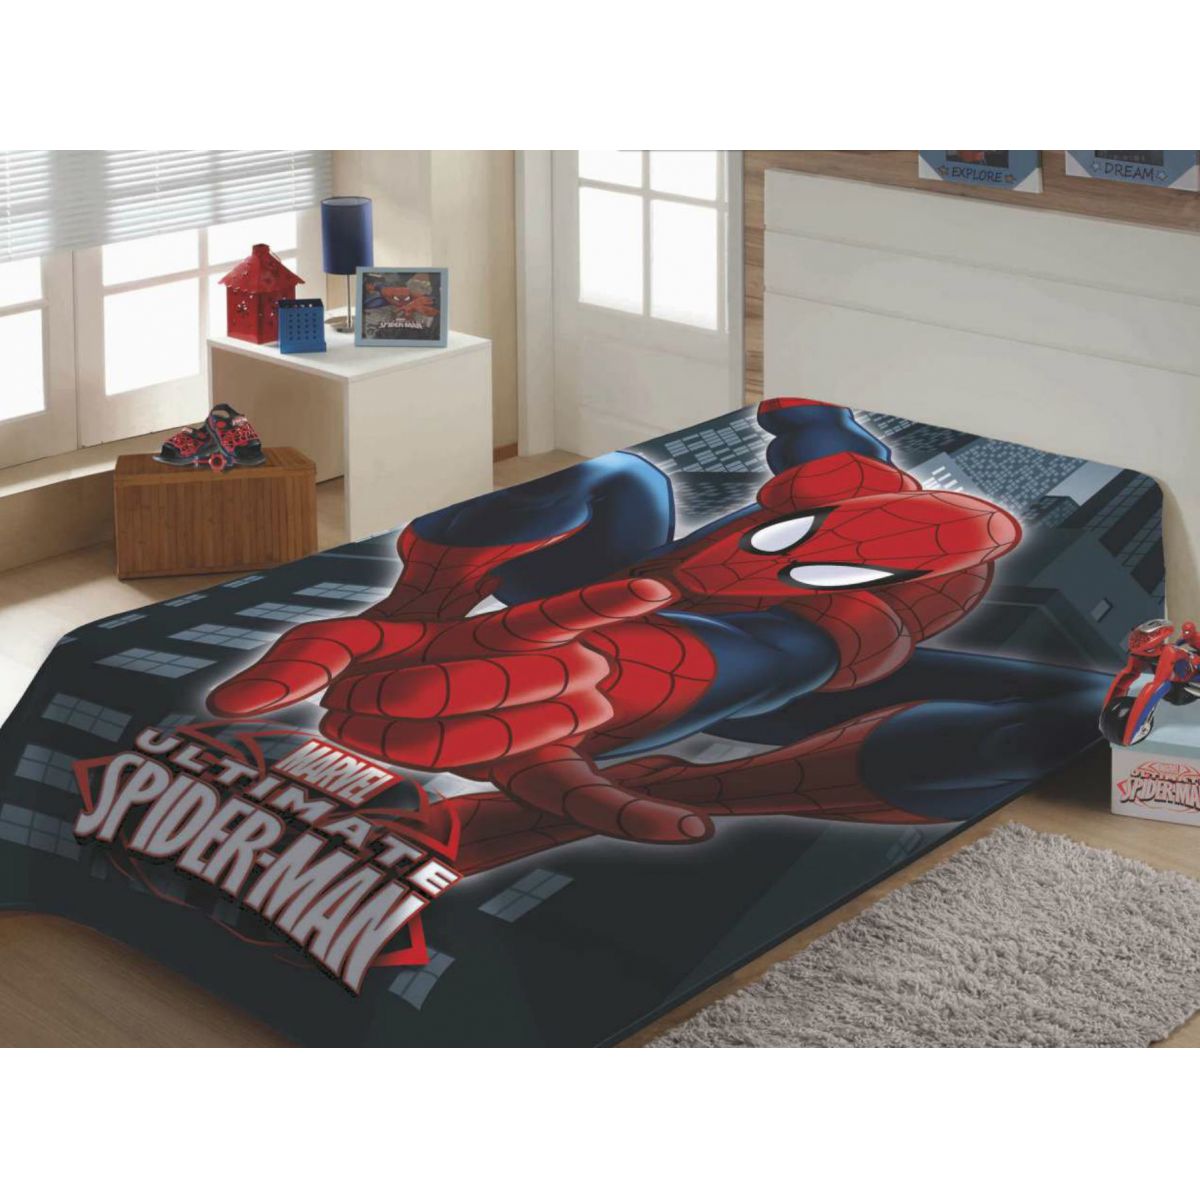 Cobertor Juvenil 1,50m x 2,00m Spiderman - Jolitex